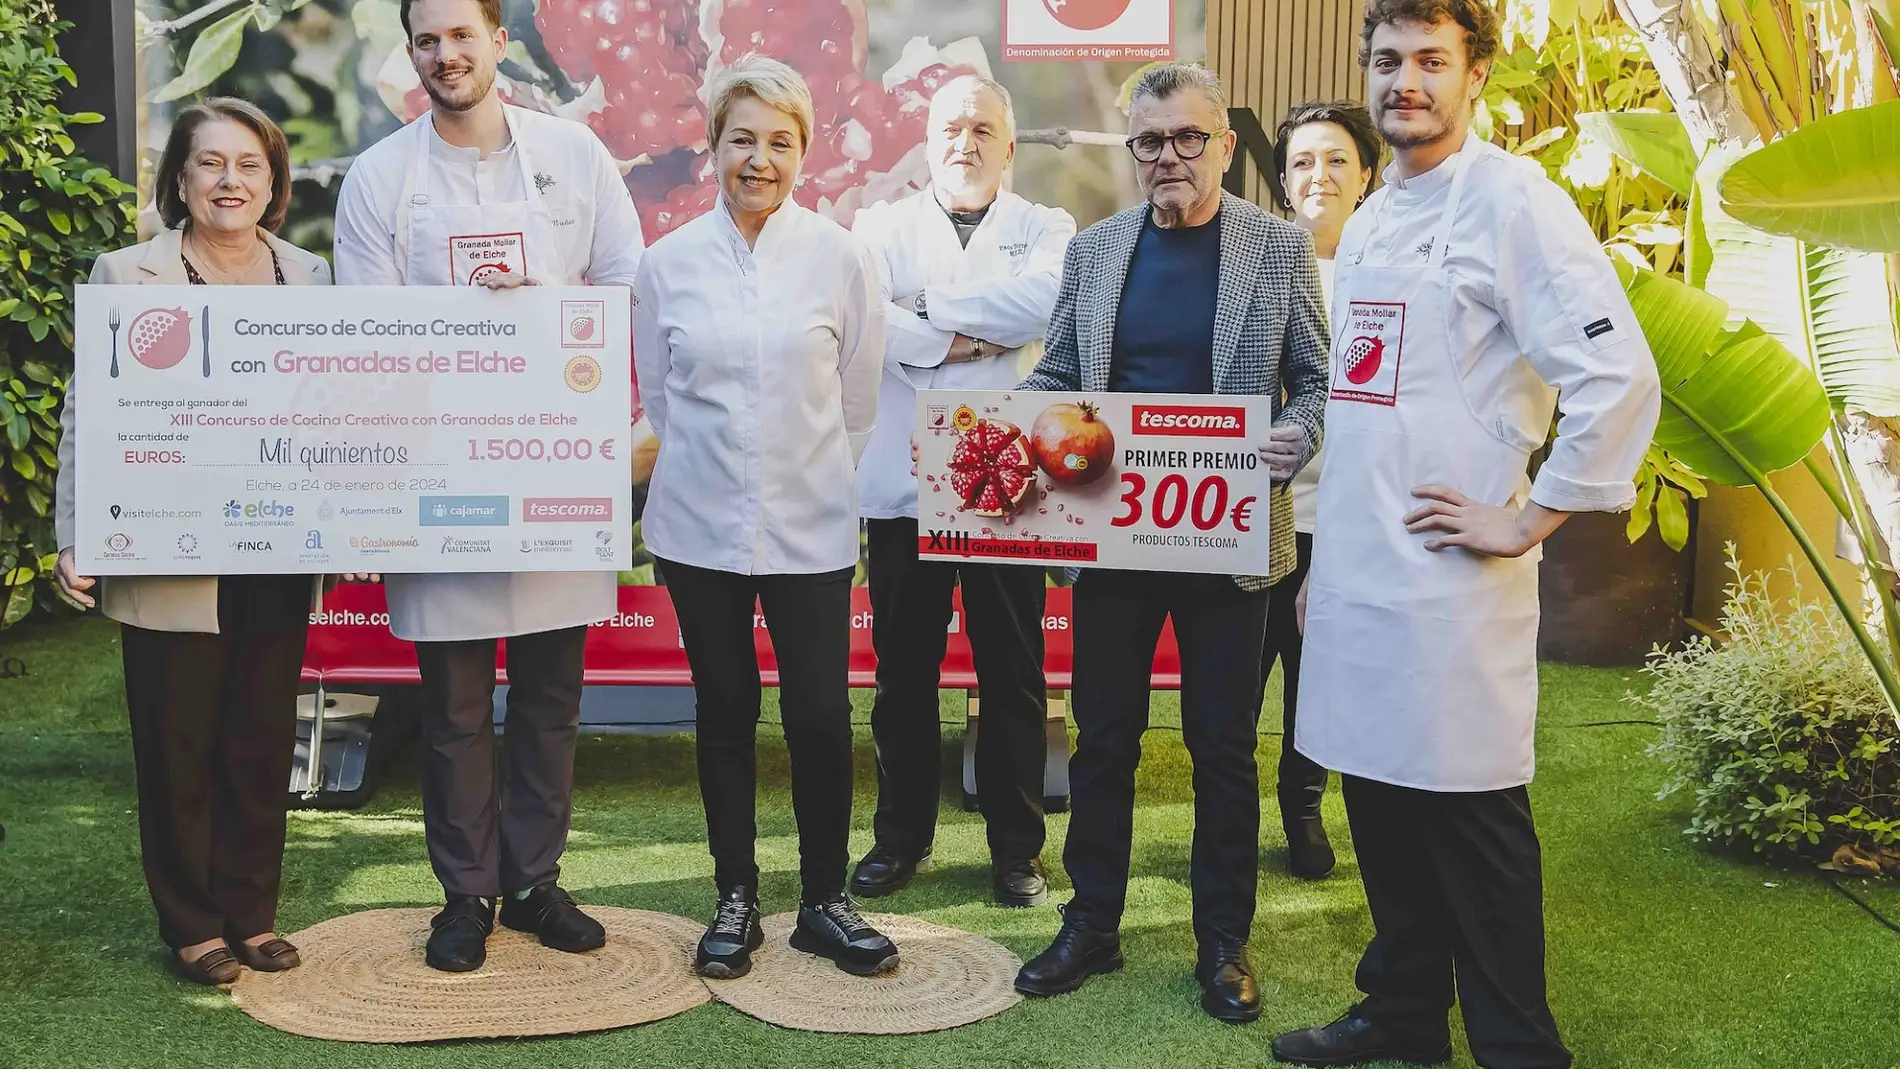 El chef oscense Jorge Muñoz gana el Concurso de cocina creativa con Granada Mollar de Elche